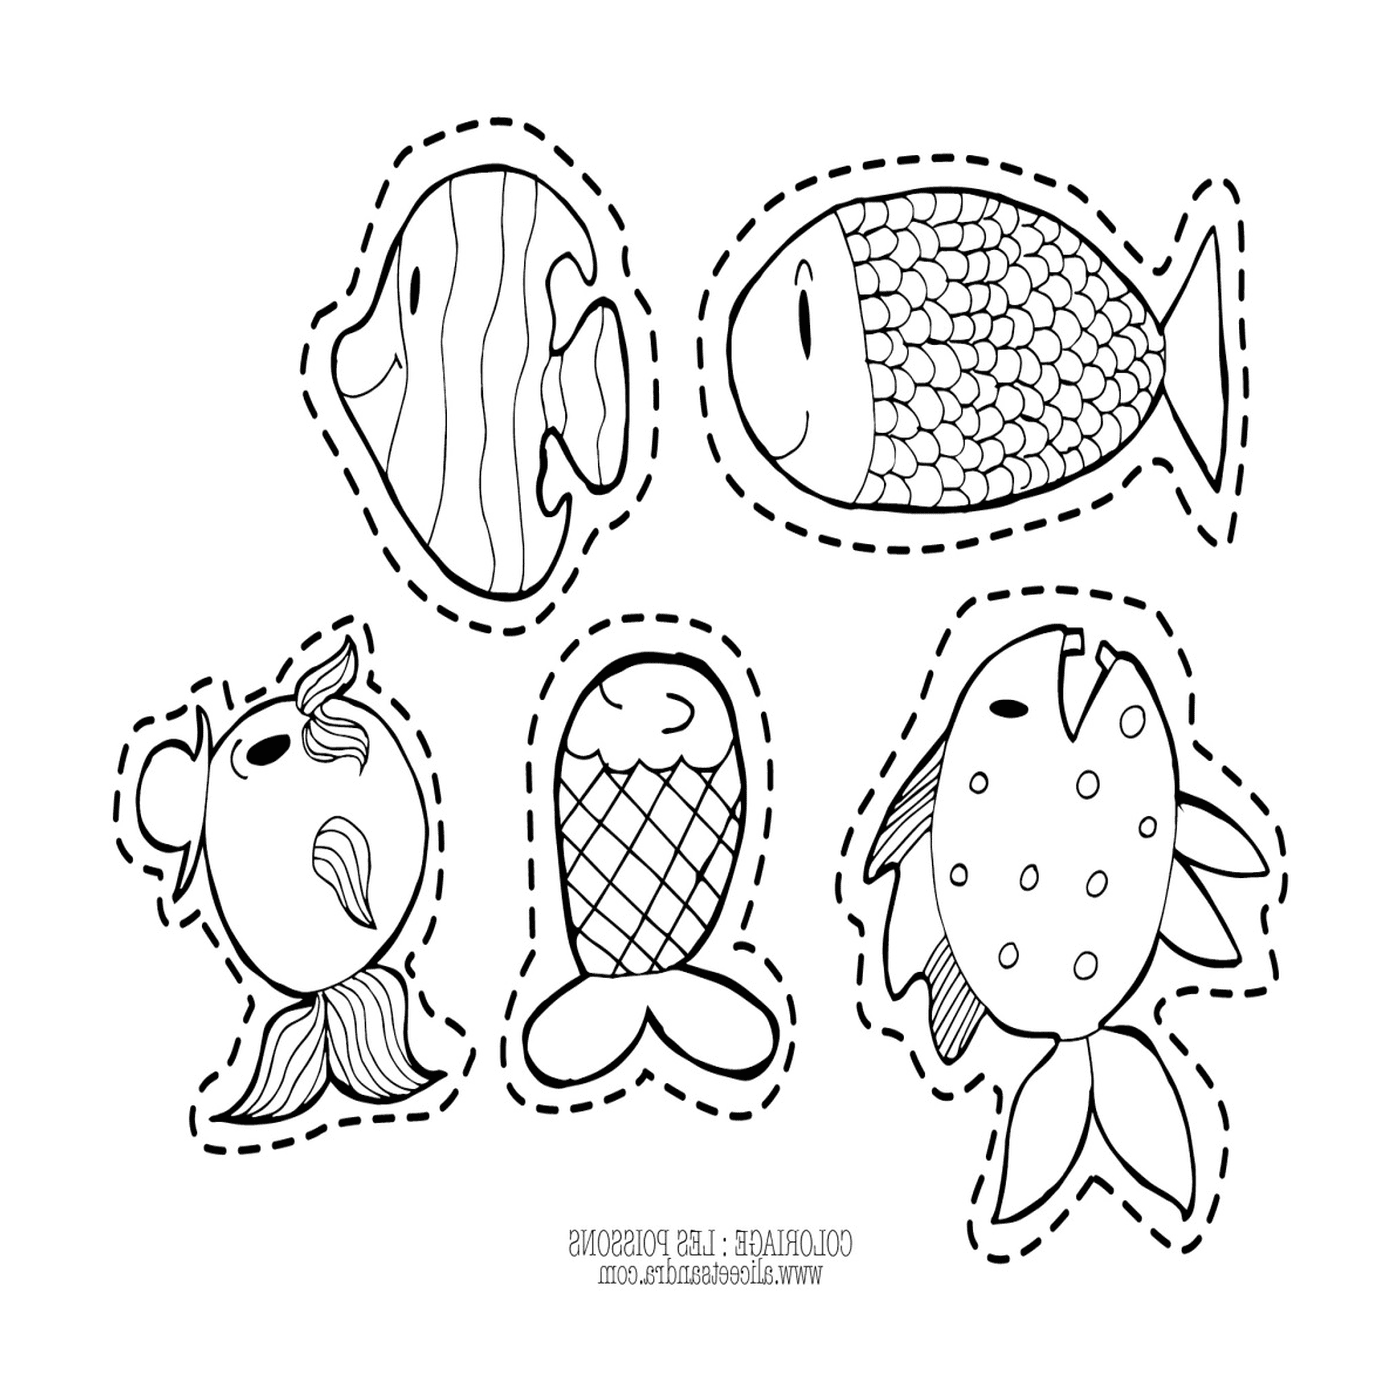   Cinq poissons dessinés sur une page 